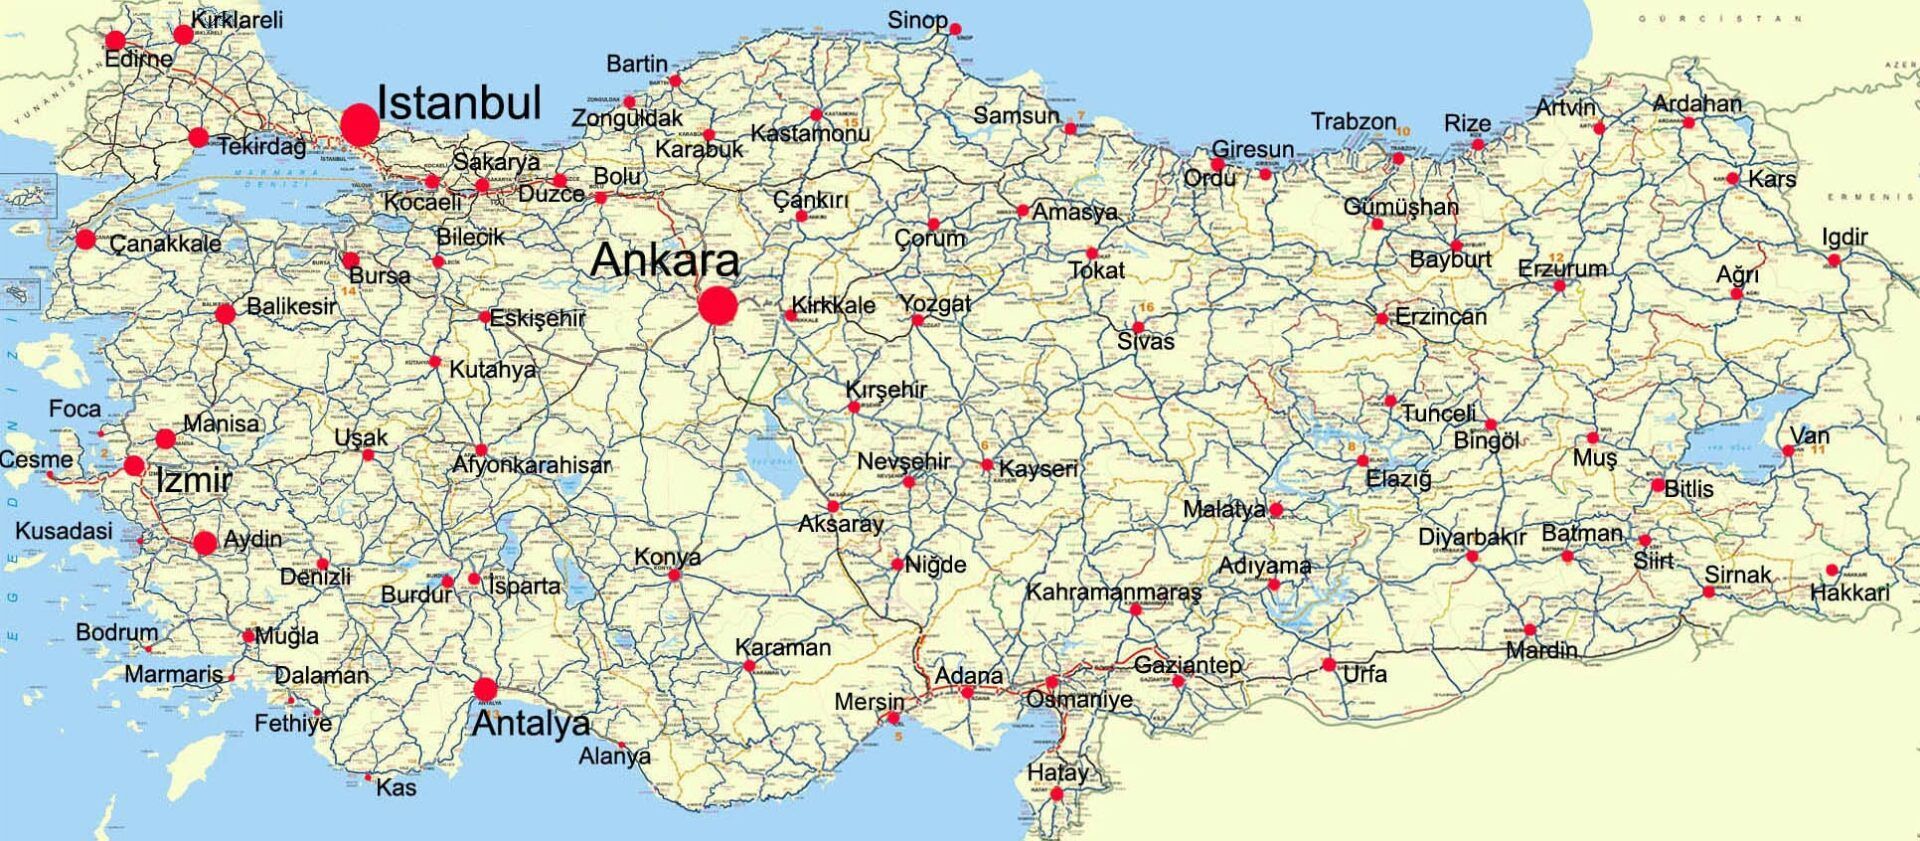 TrueTurkeyTravel kaart van Turkije